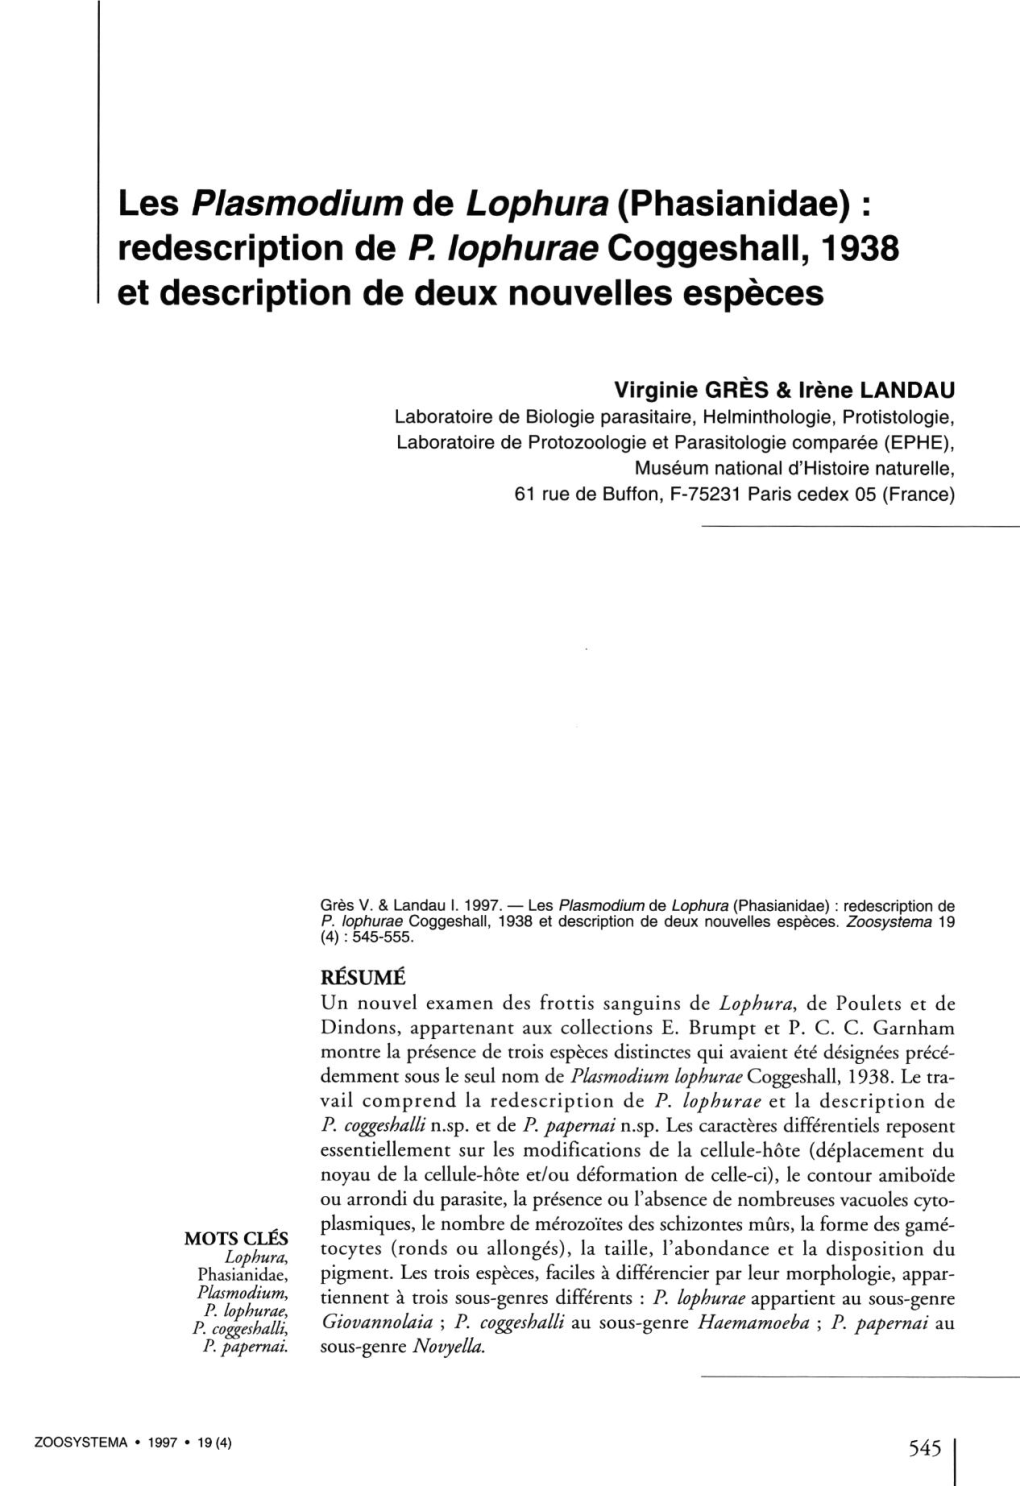 Les Plasmodium De Lophura (Phasianidae) : Redescription De P. Lophurae Coggeshall, 1938 Et Description De Deux Nouvelles Espèces